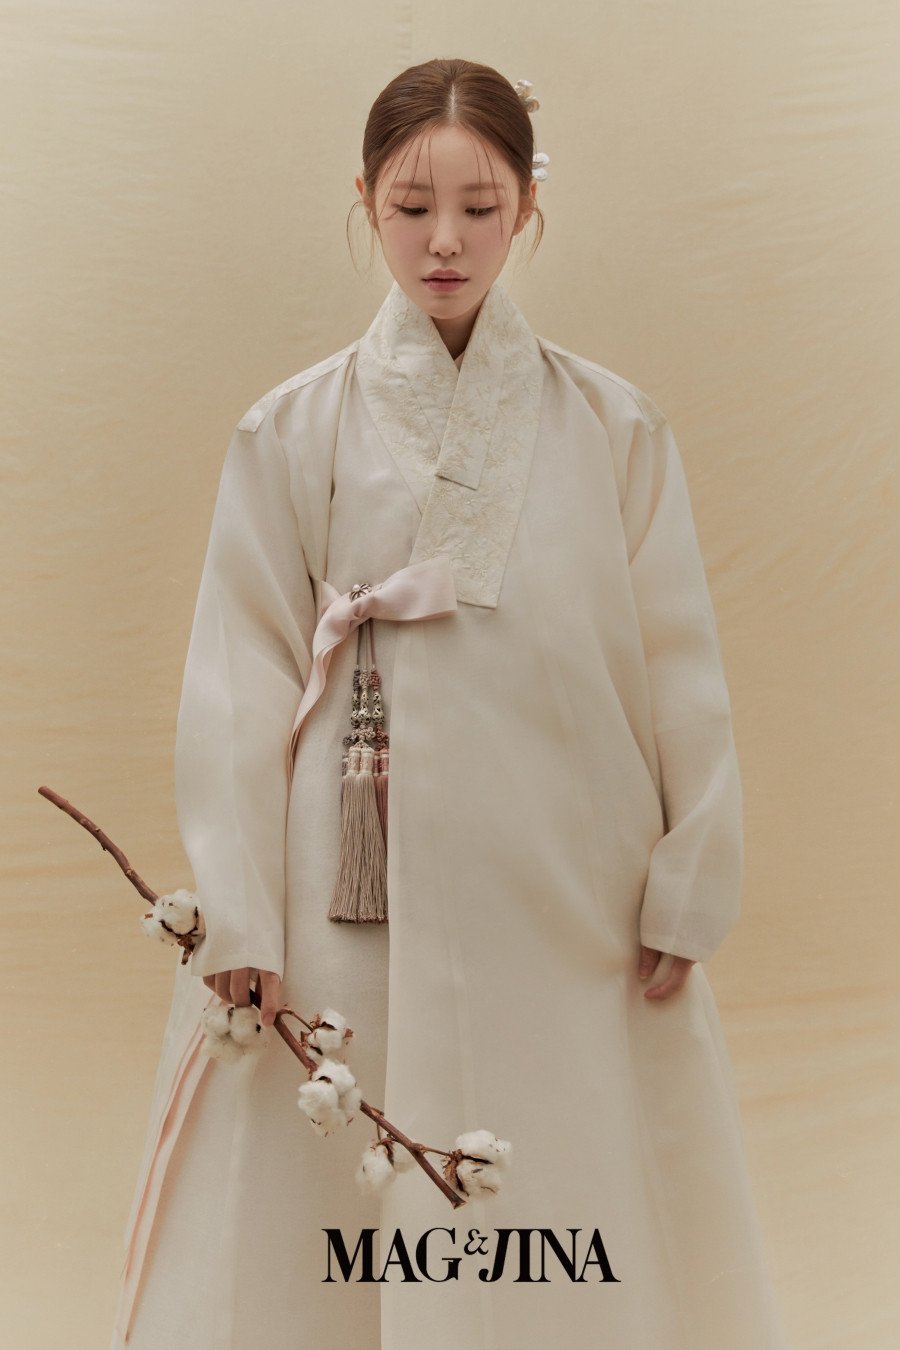 Hyosung (SECRET) đẹp vô thực trong bộ ảnh chụp với Hanbok trên tạp chí Mag & Jina - Ảnh 5